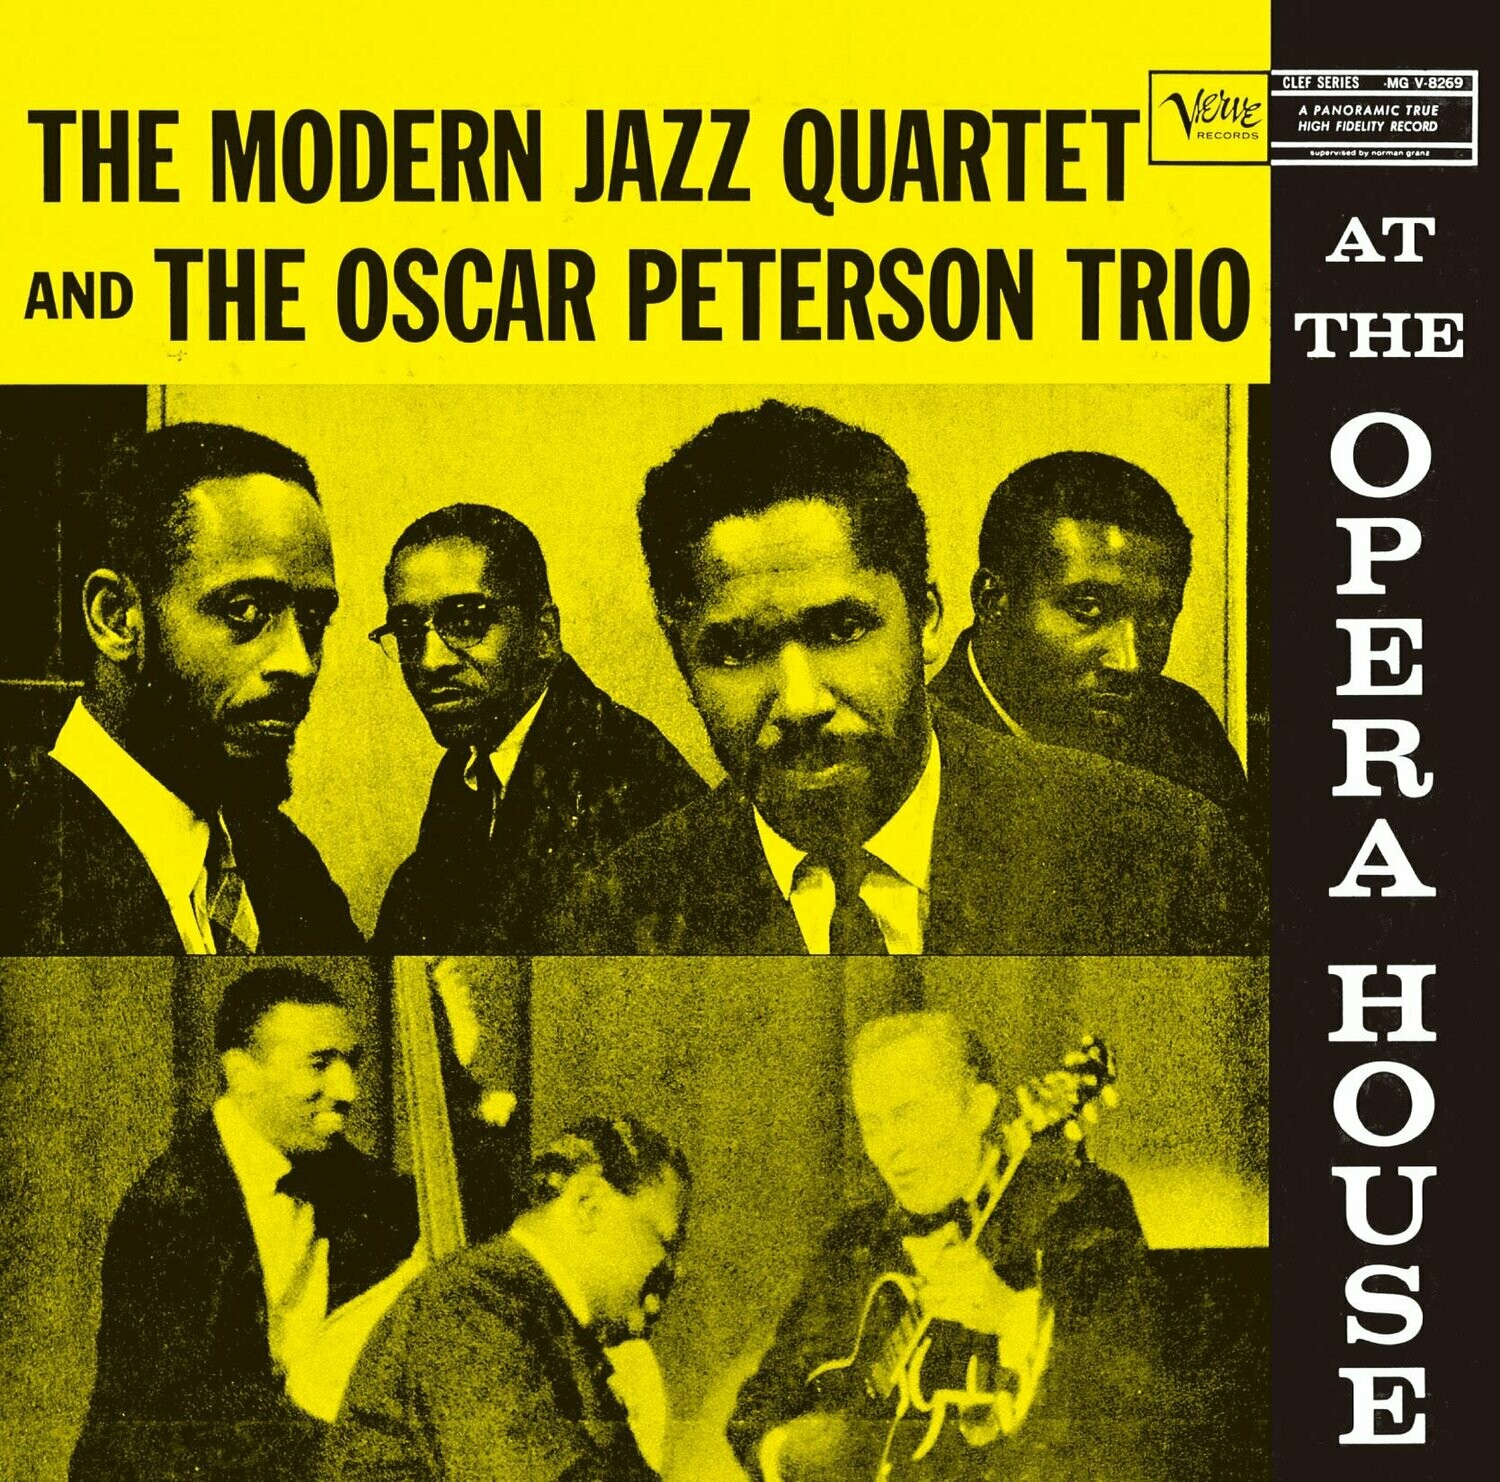 The Modern Jazz Quartet & The Oscar Peterson Trio "At The Opera House" VG 1957 *MONO*